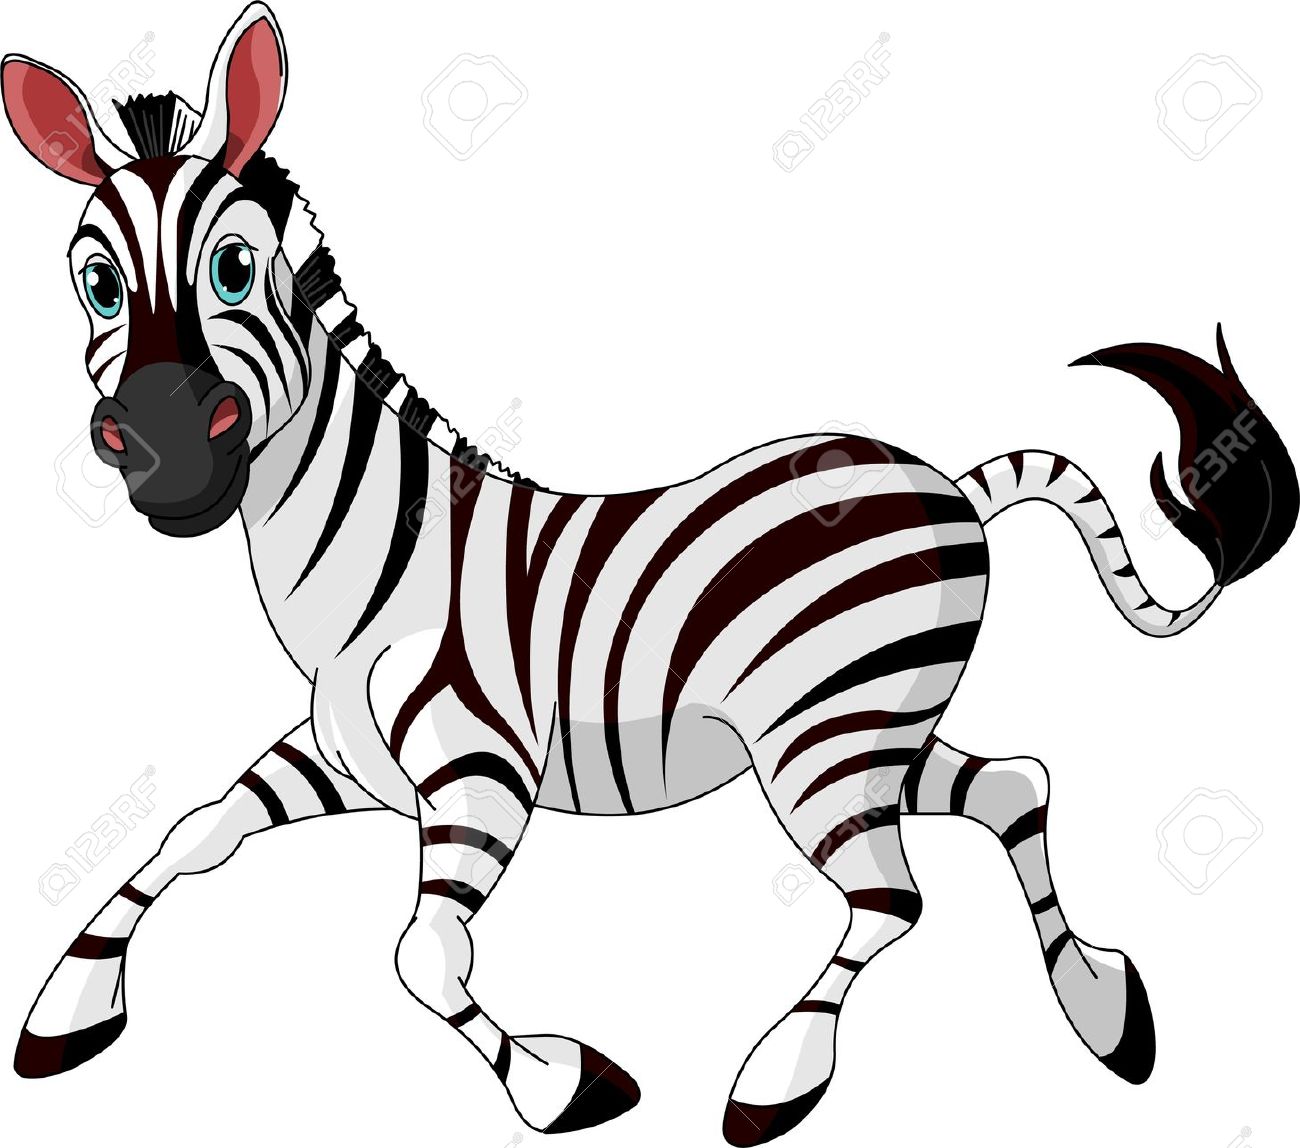 Zebra clipart Zebra animals c